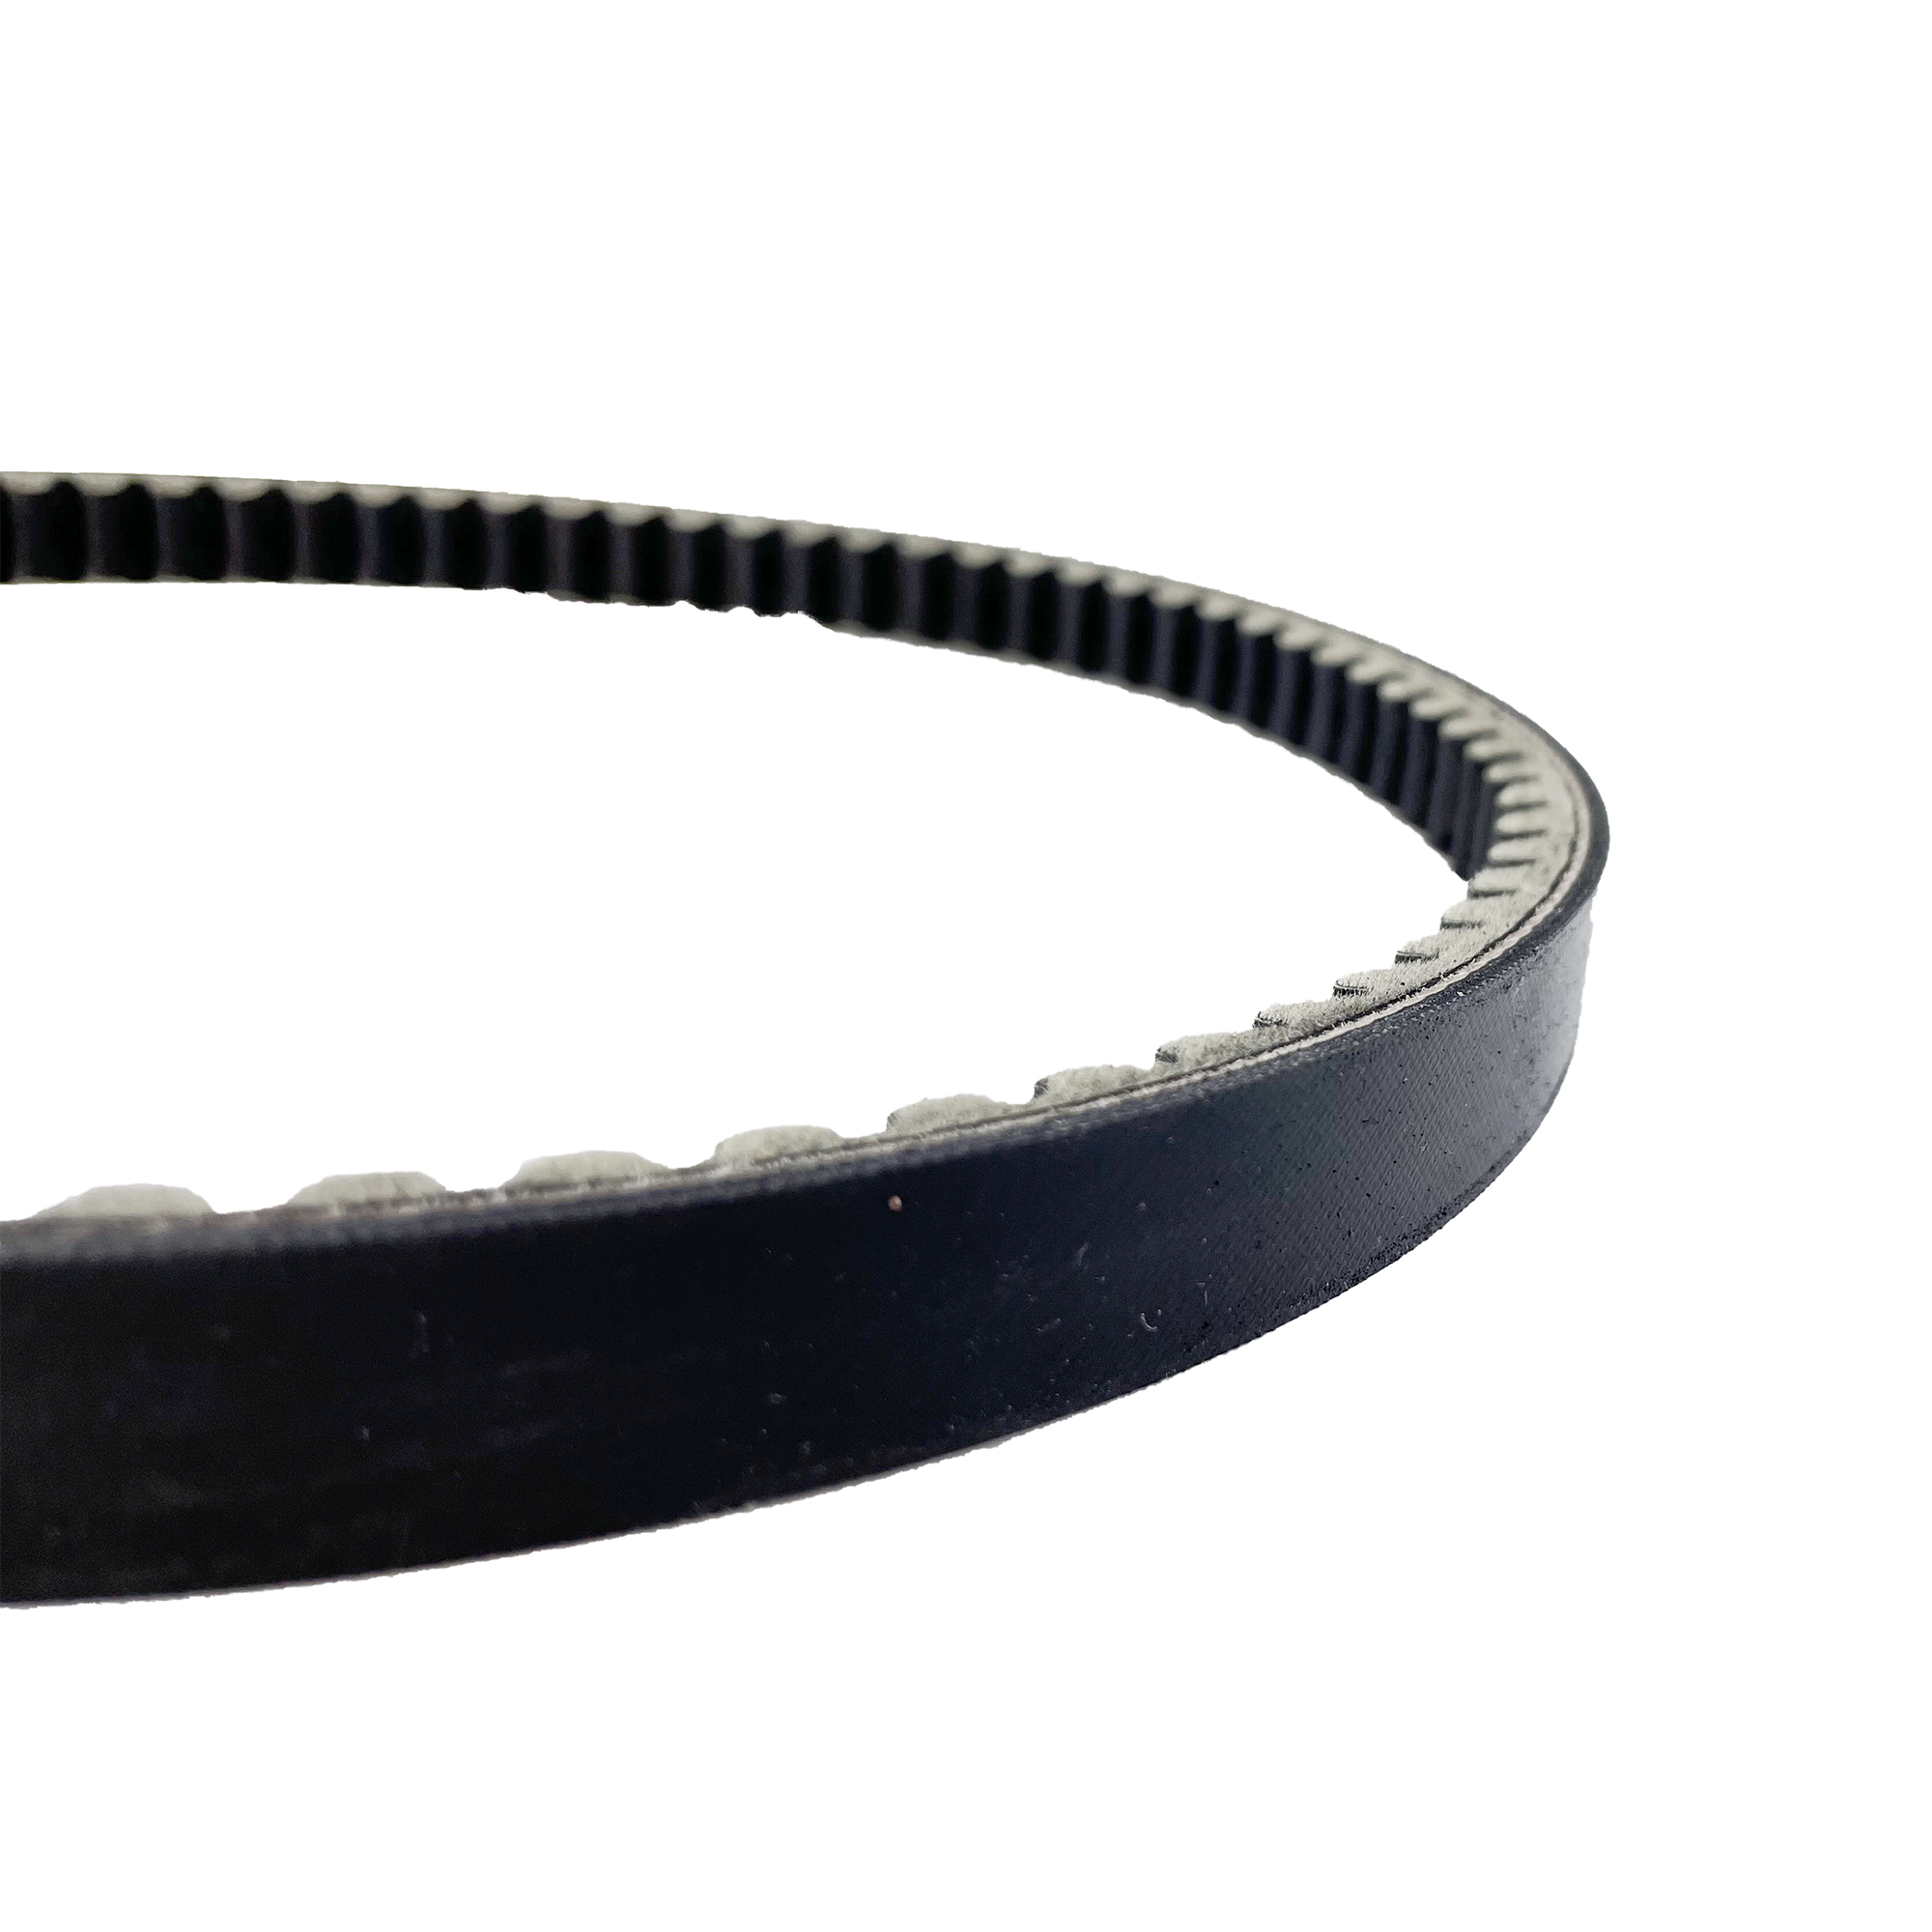 China Factory Manufacturer Rubber Belts V Belt Timing Belt